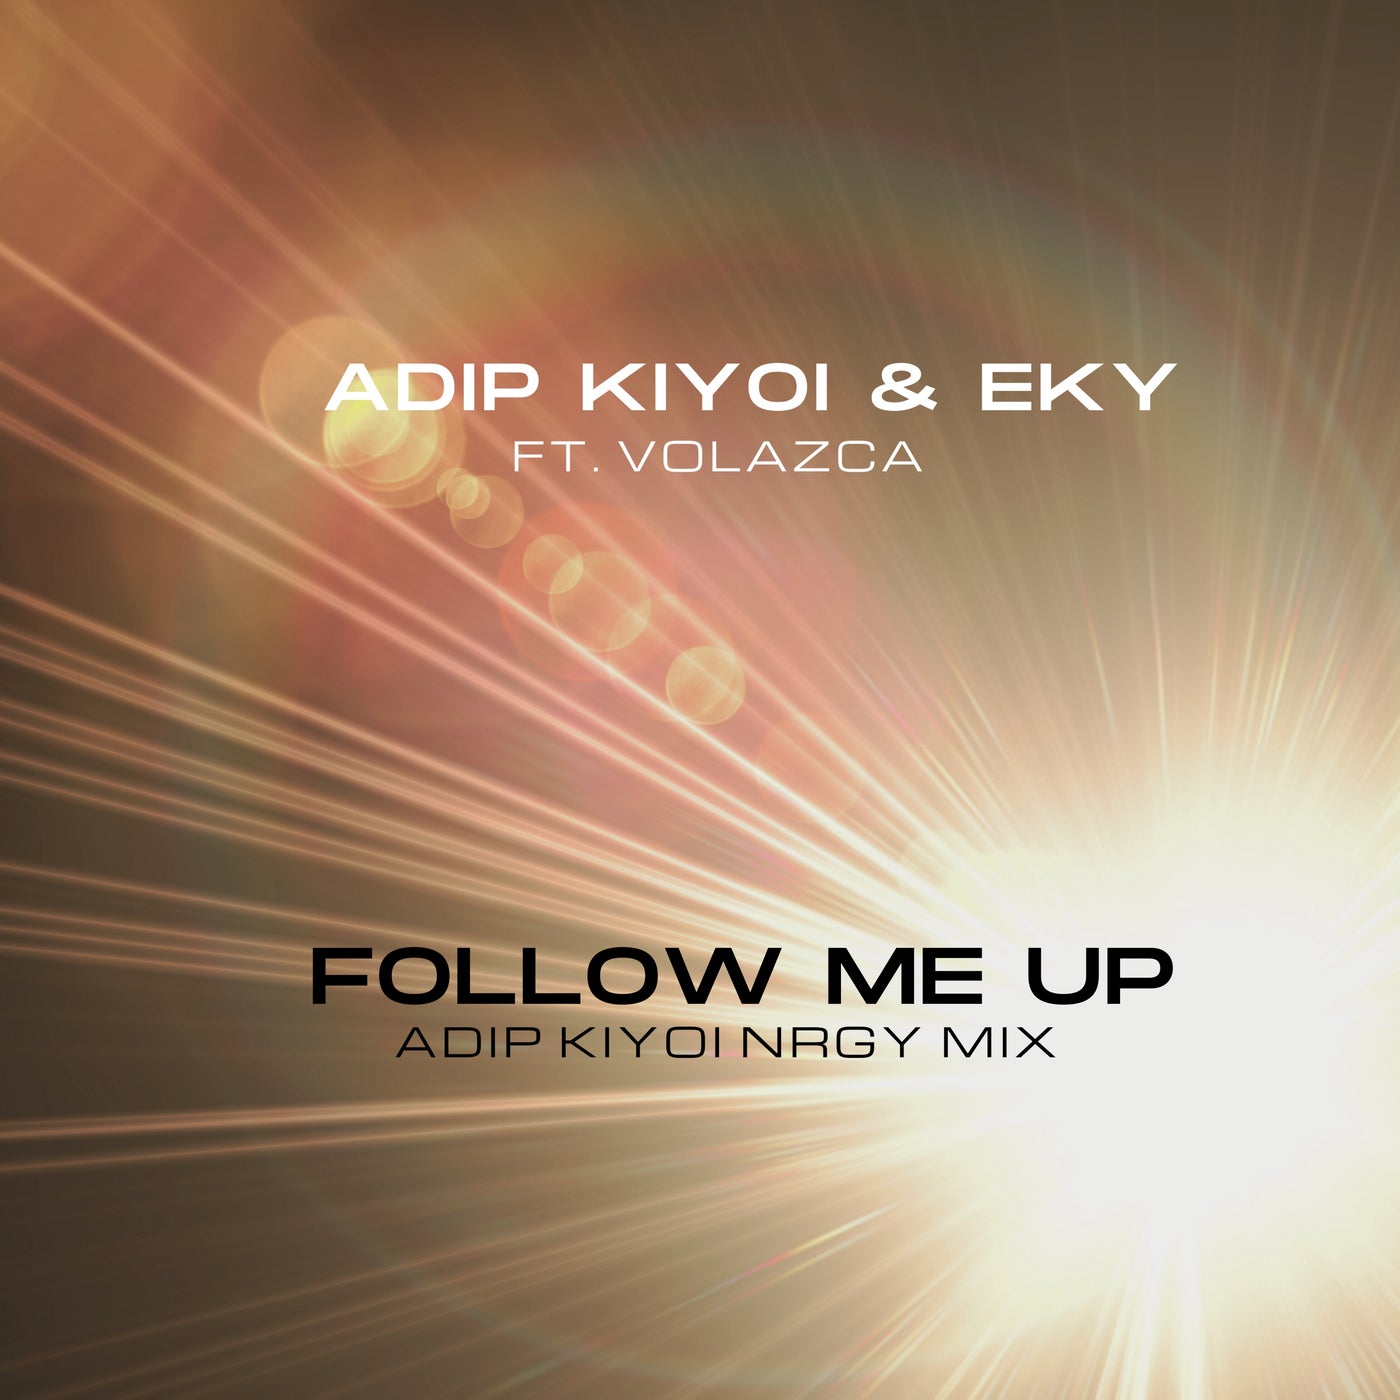 Cover - Volazca, Adip Kiyoi, Eky - Follow Me Up (Adip Kiyoi Extended NRGY Mix)